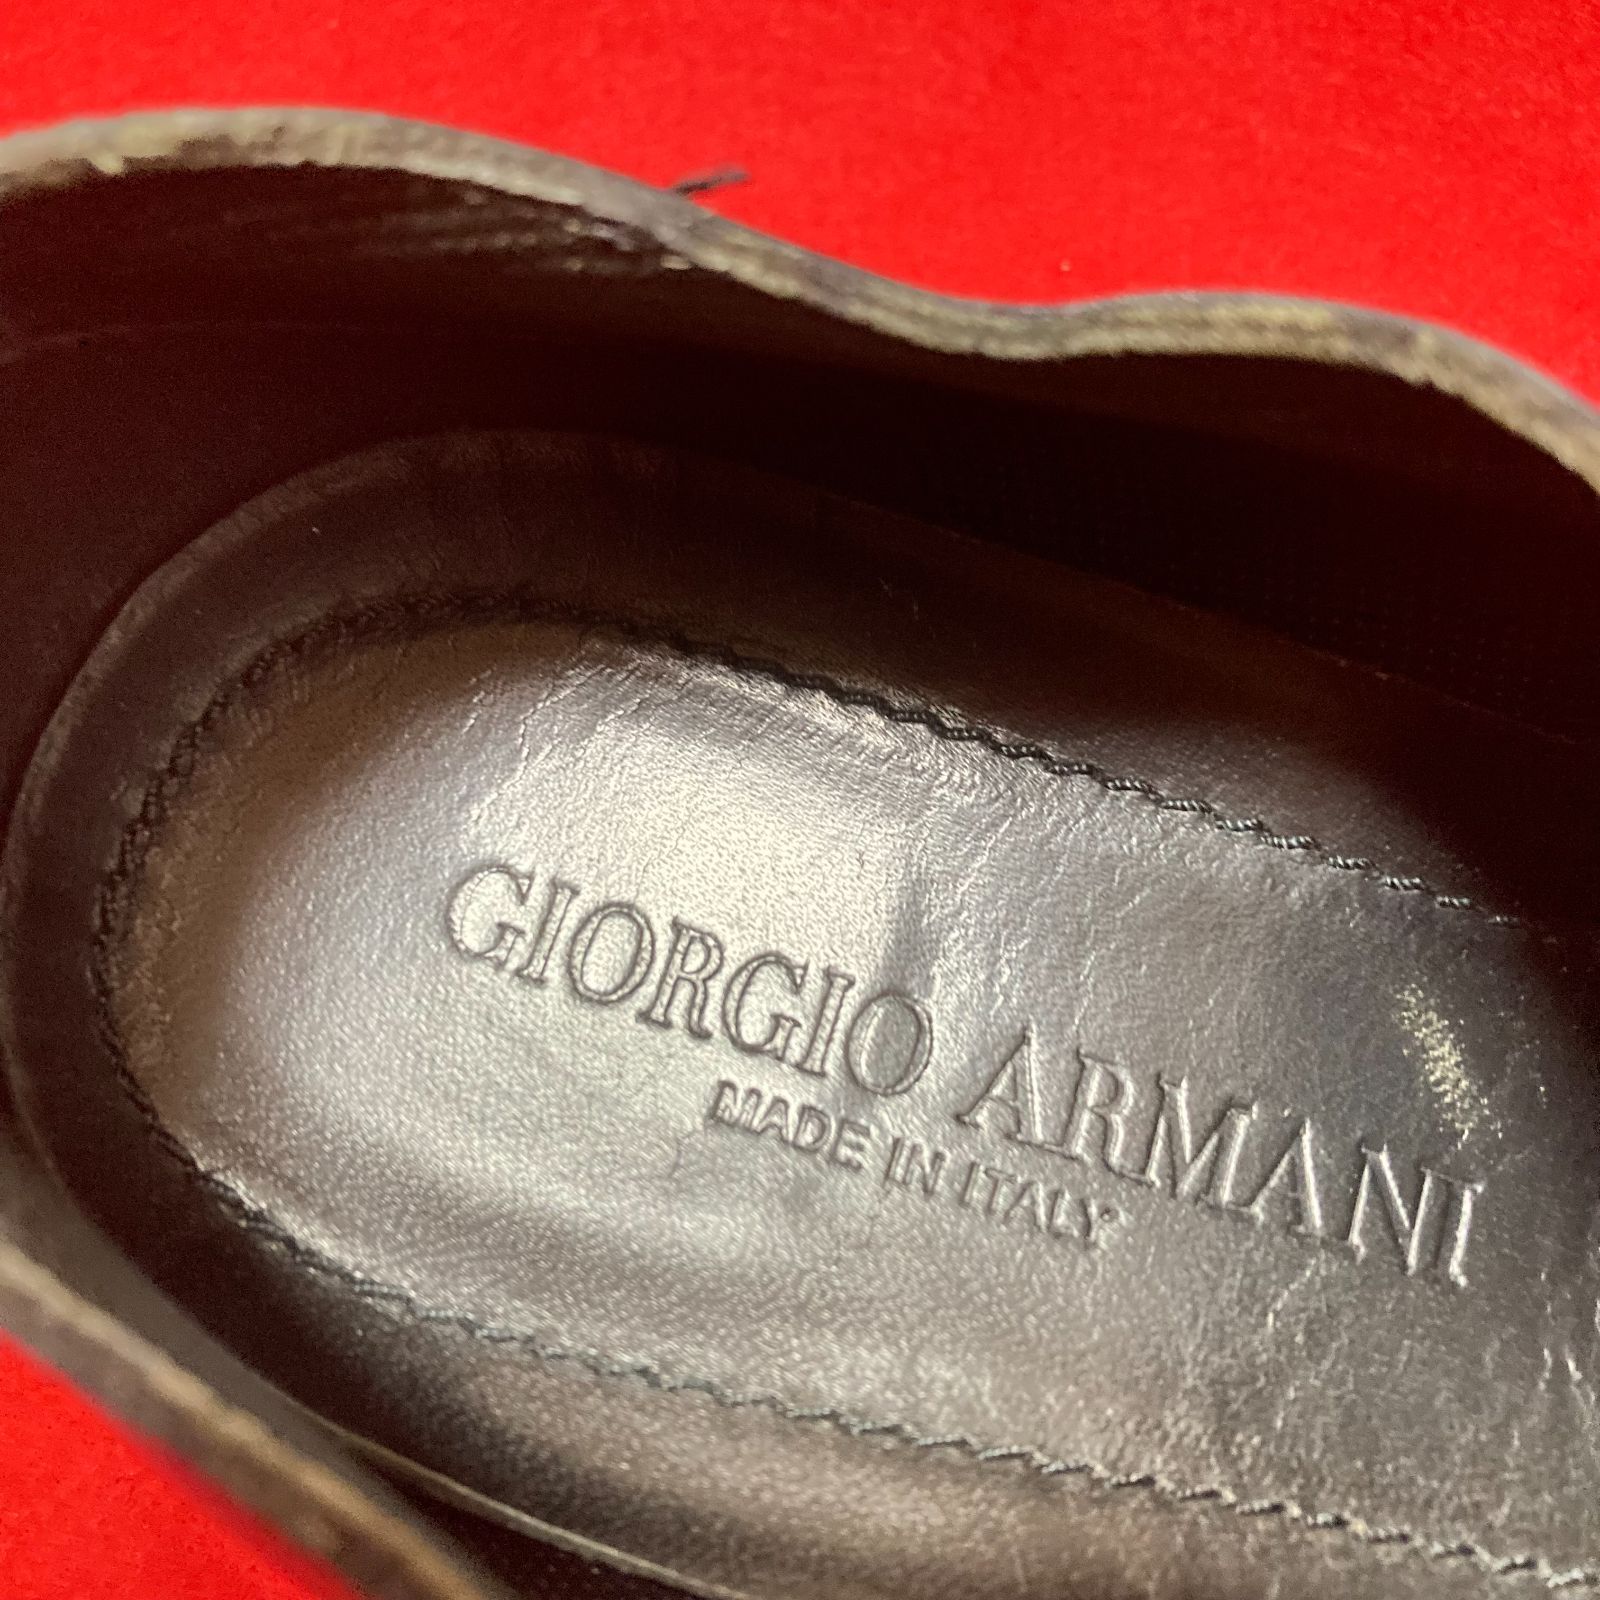 ジョルジオアルマーニ GIORGIO ARMANI 靴 25cm ネイビー系 カジュアルシューズ ビジネスシューズ パッチング レザー メンズ 伊製 7